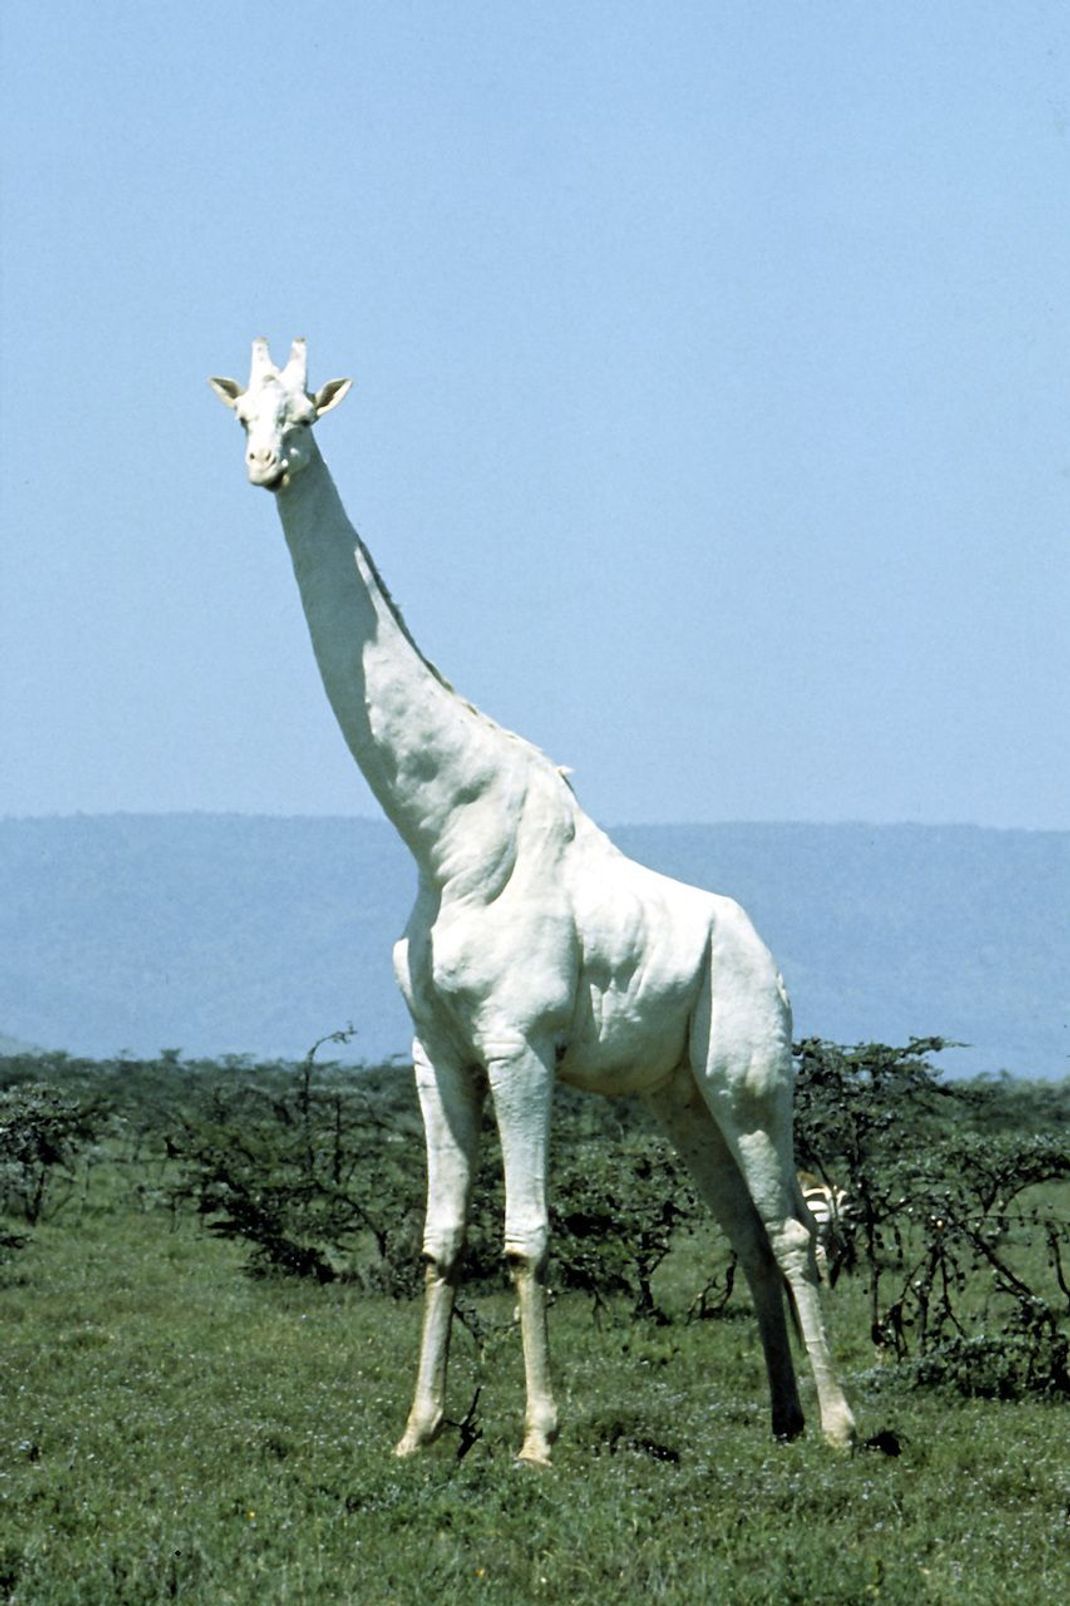 Spektakuläre Aufnahmen von weißen Giraffen gingen 2017 viral. 2020 wurden eine weiße Kuh und ihr Kalb von Wilderern getötet. Vermutlich um die überlebende Giraffe zu schützen, ist es im Internet still um die seltenen Tiere geworden. Hinter der weißen Farbe vermutet man übrigens Leuzismus, einen seltenen Gen-Defekt. 